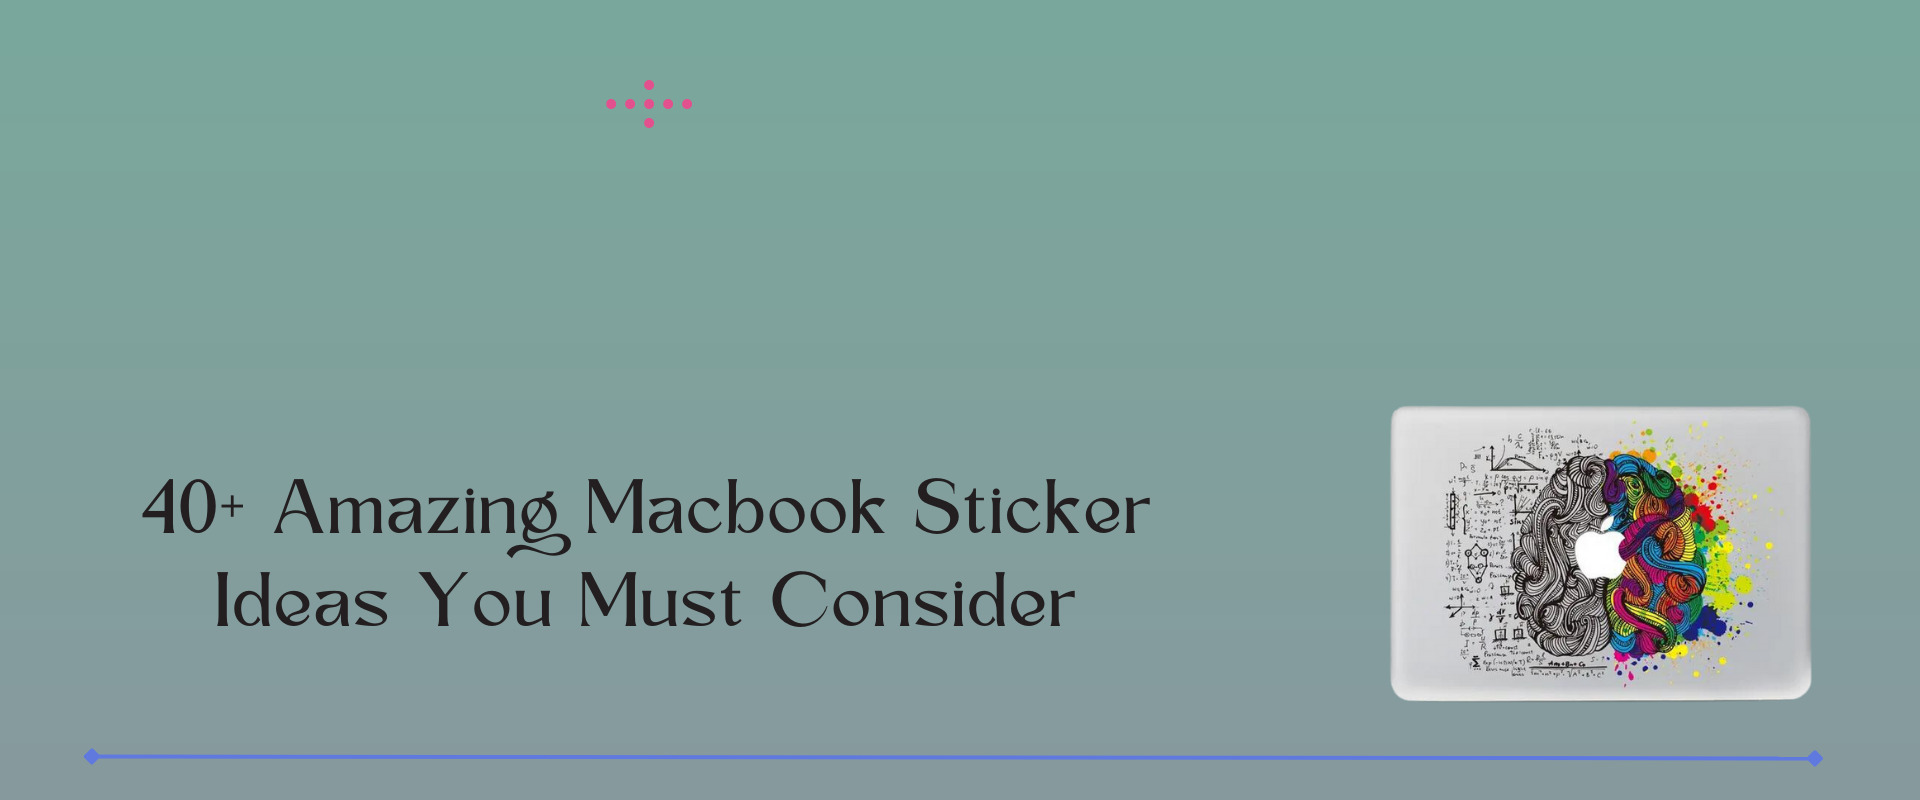 macbook sticker ideas